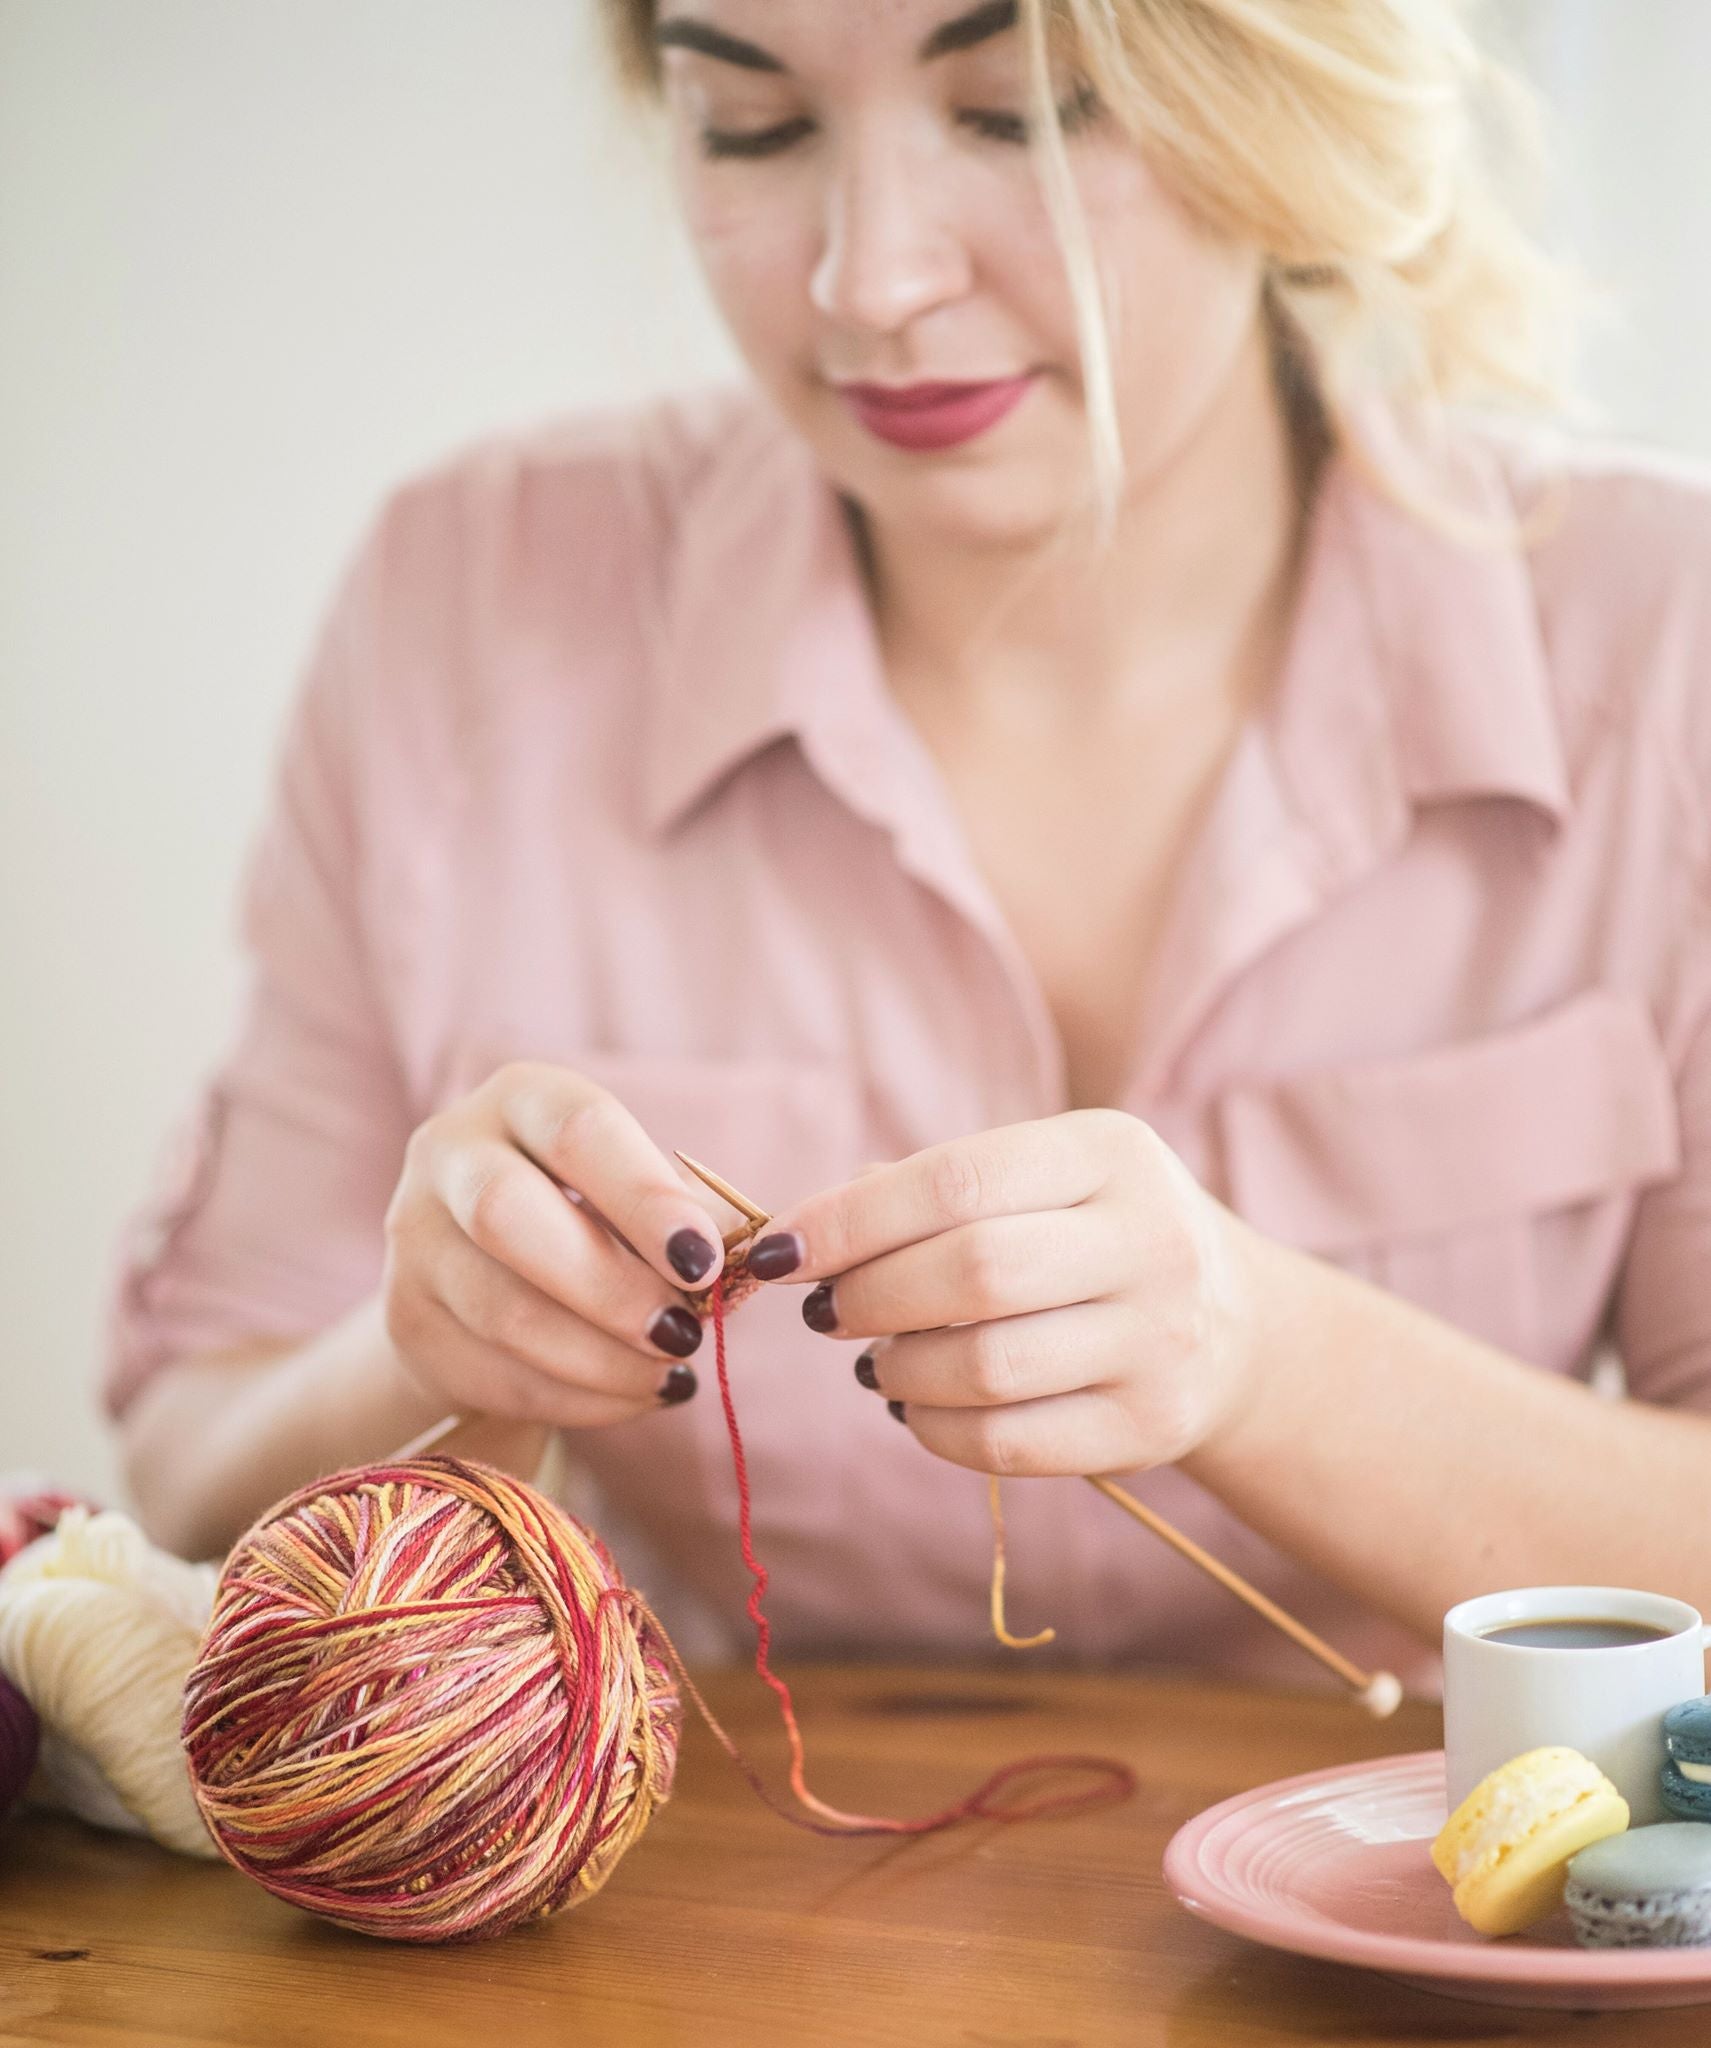 Is It Rude to Knit or Crochet in Public?